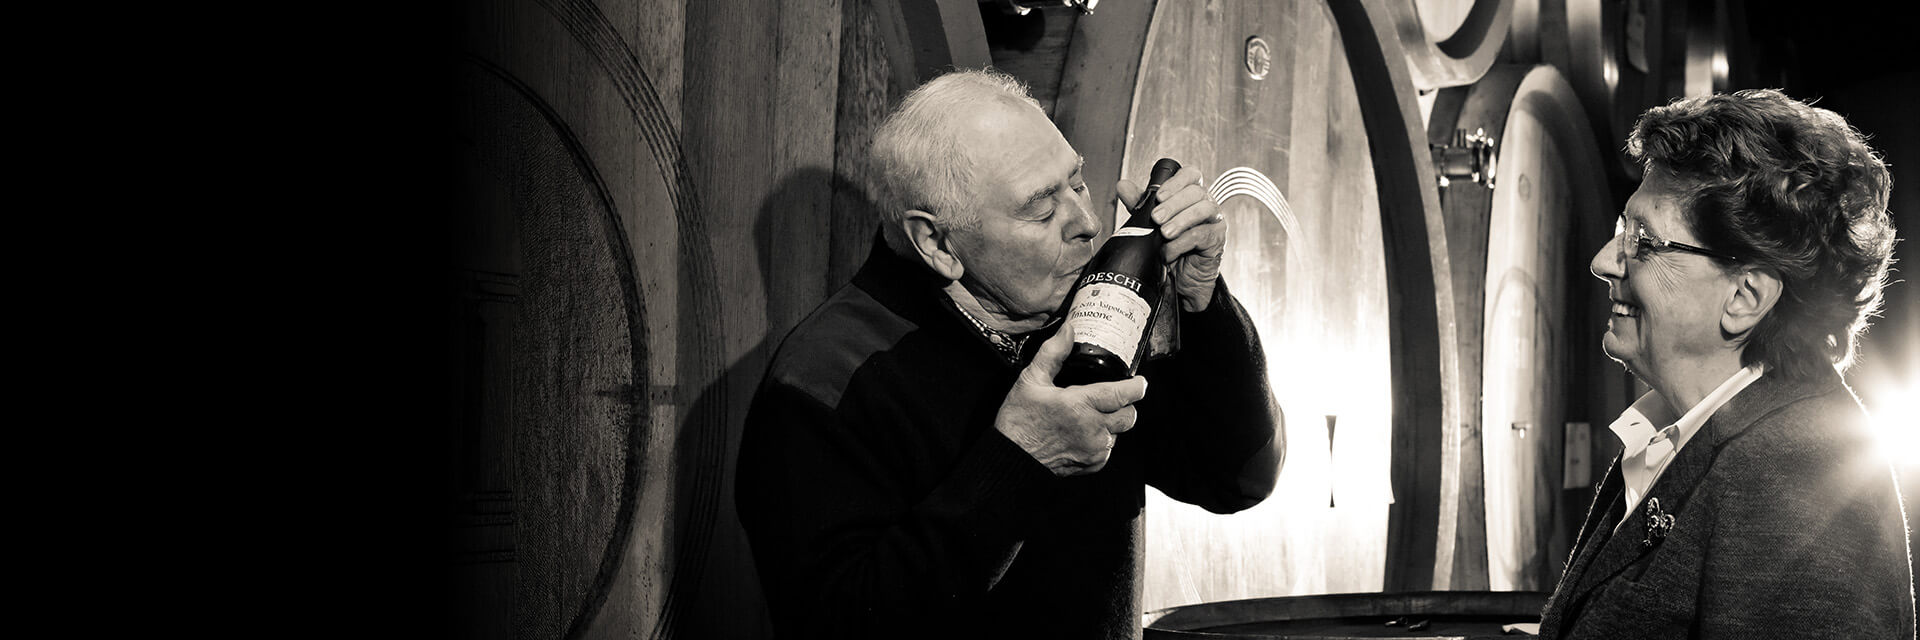 90 years of winemaking history